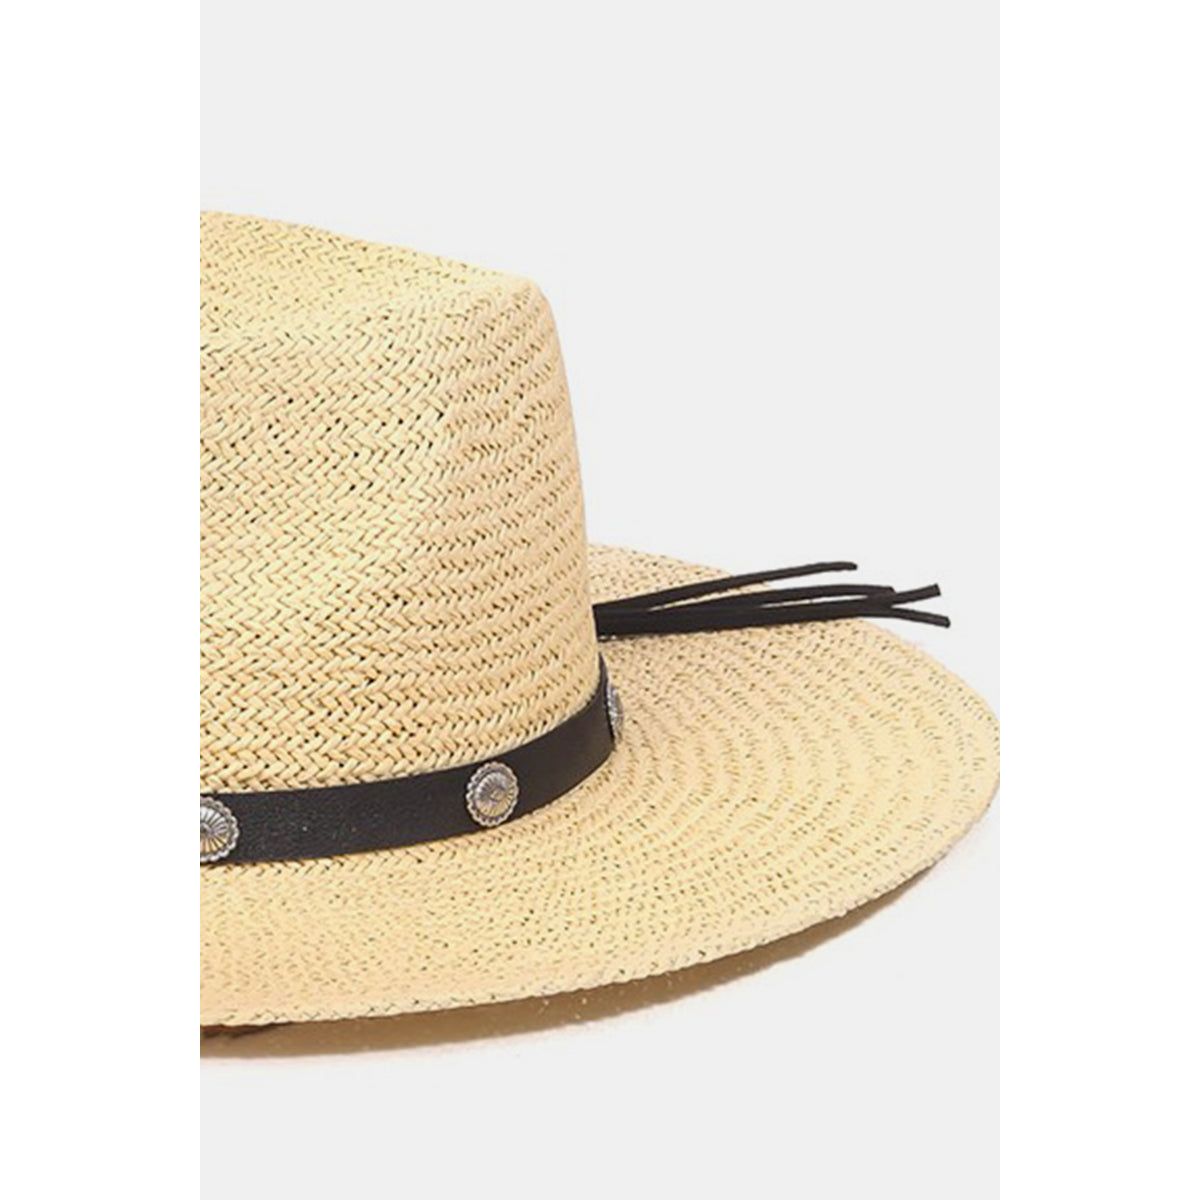 Fame Belt Strap Straw Hat - TiffanyzKlozet